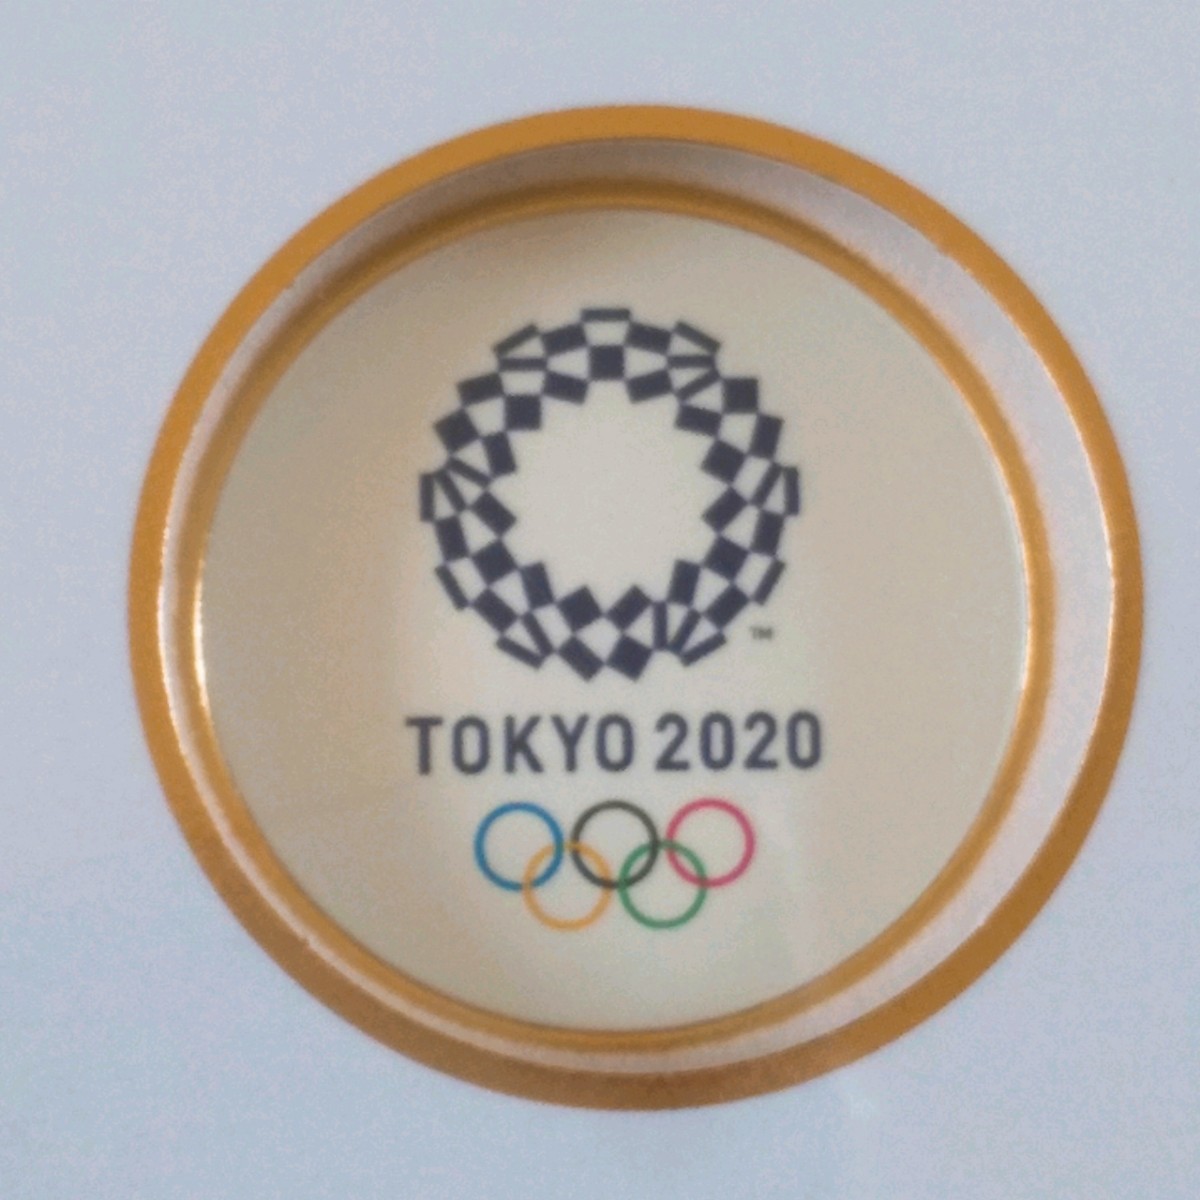 【送料無料】東京2020オリンピックパラリンピック 記念刻印メダリオンセット